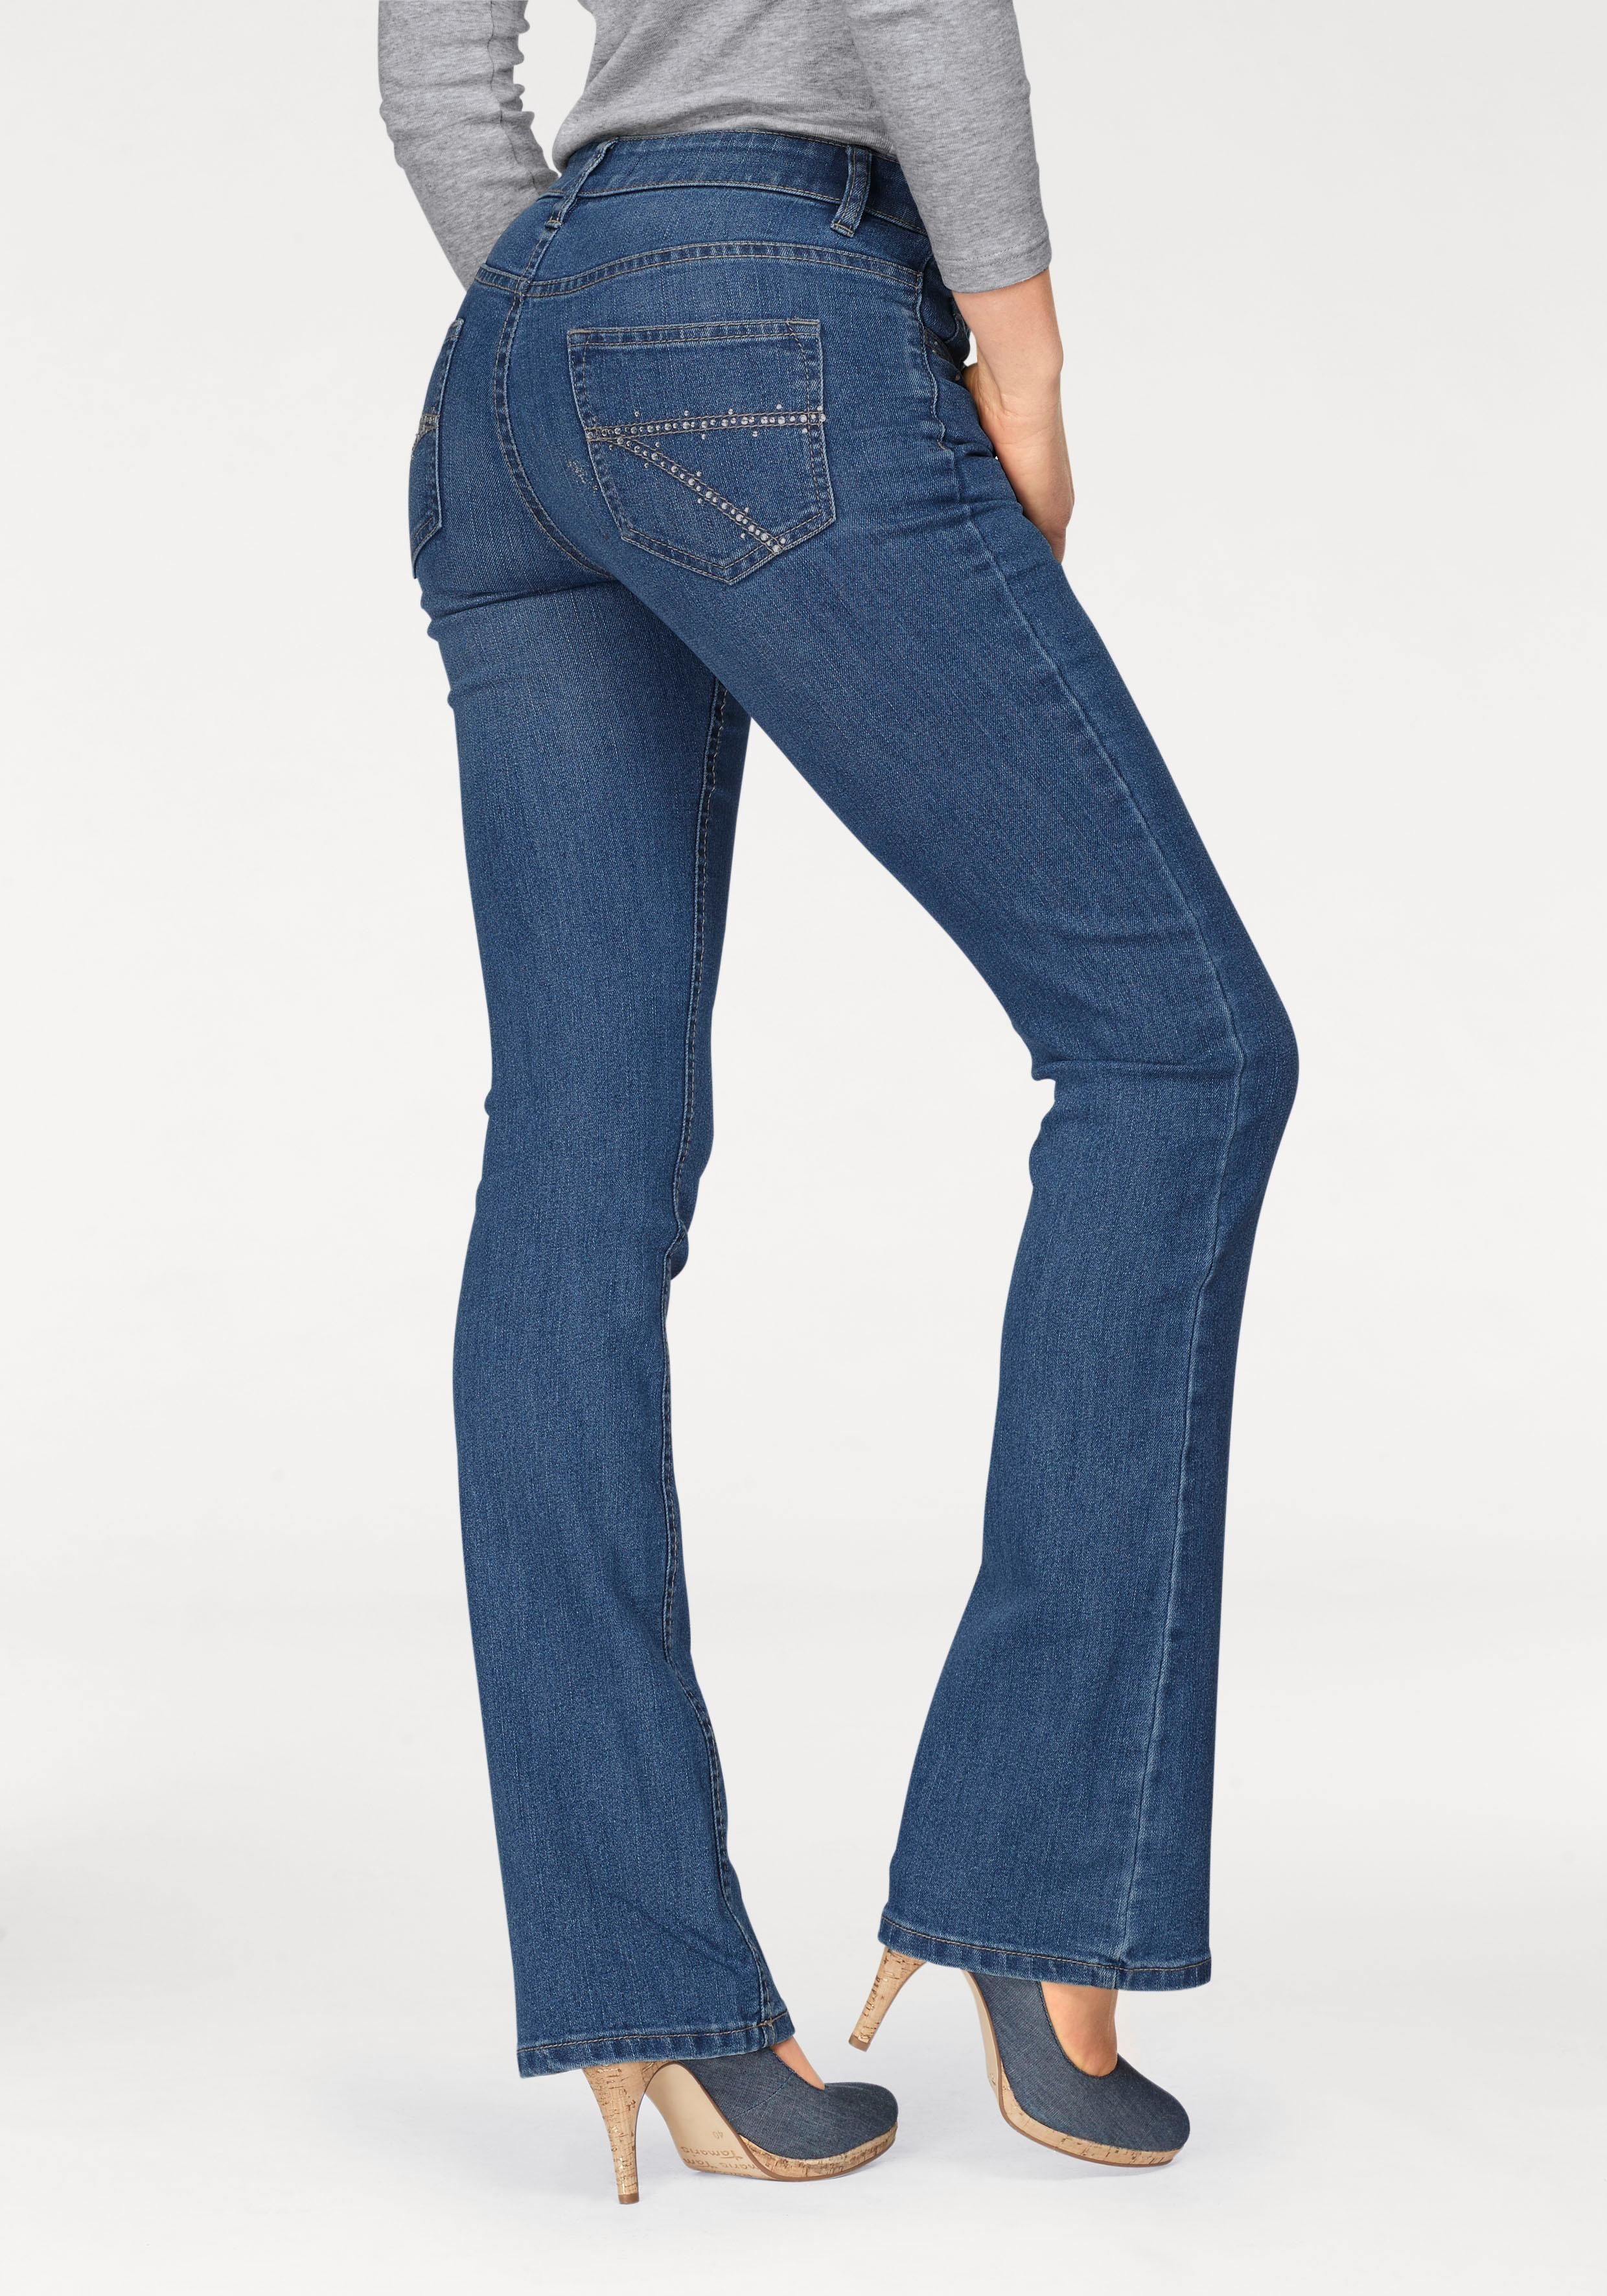 Otto - Arizona NU 15% KORTING: Arizona bootcut jeans zakken met glinstersteentjesapplicatie